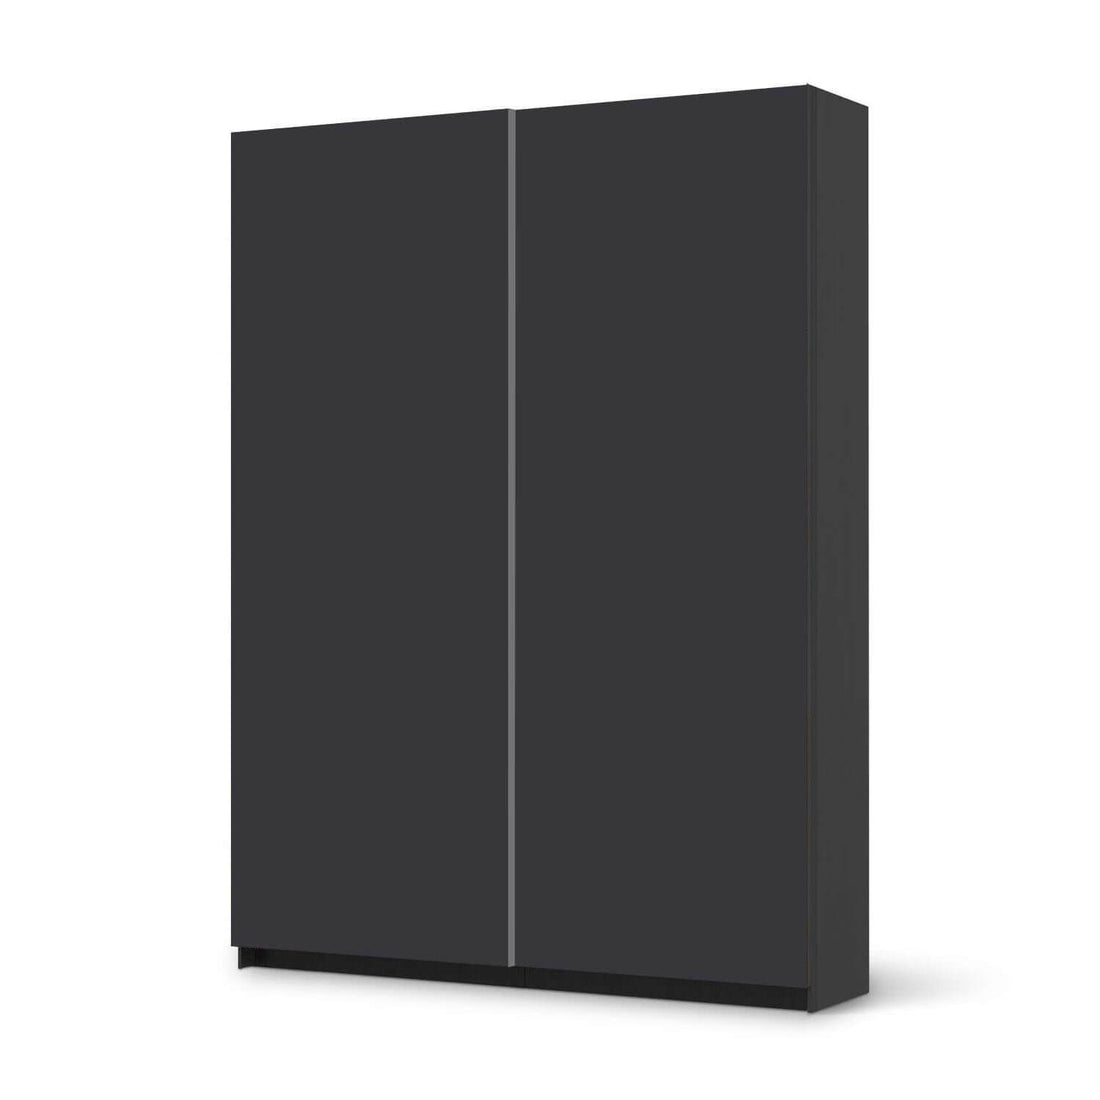 Möbel Klebefolie Grau Dark - IKEA Pax Schrank 201 cm Höhe - Schiebetür 75 cm - schwarz